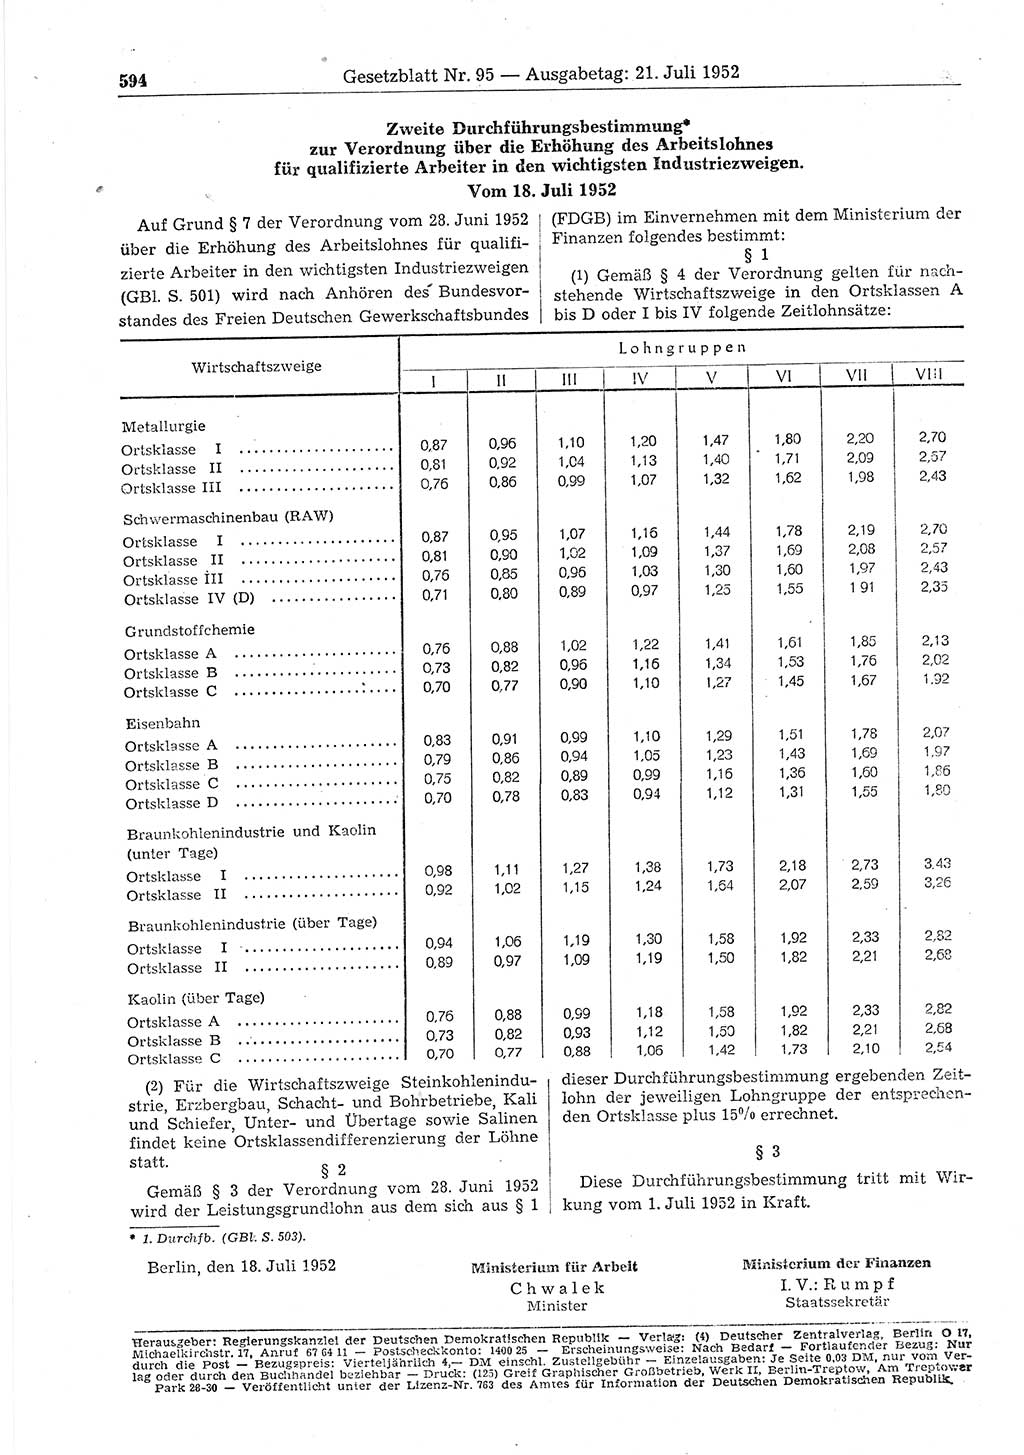 Gesetzblatt (GBl.) der Deutschen Demokratischen Republik (DDR) 1952, Seite 594 (GBl. DDR 1952, S. 594)